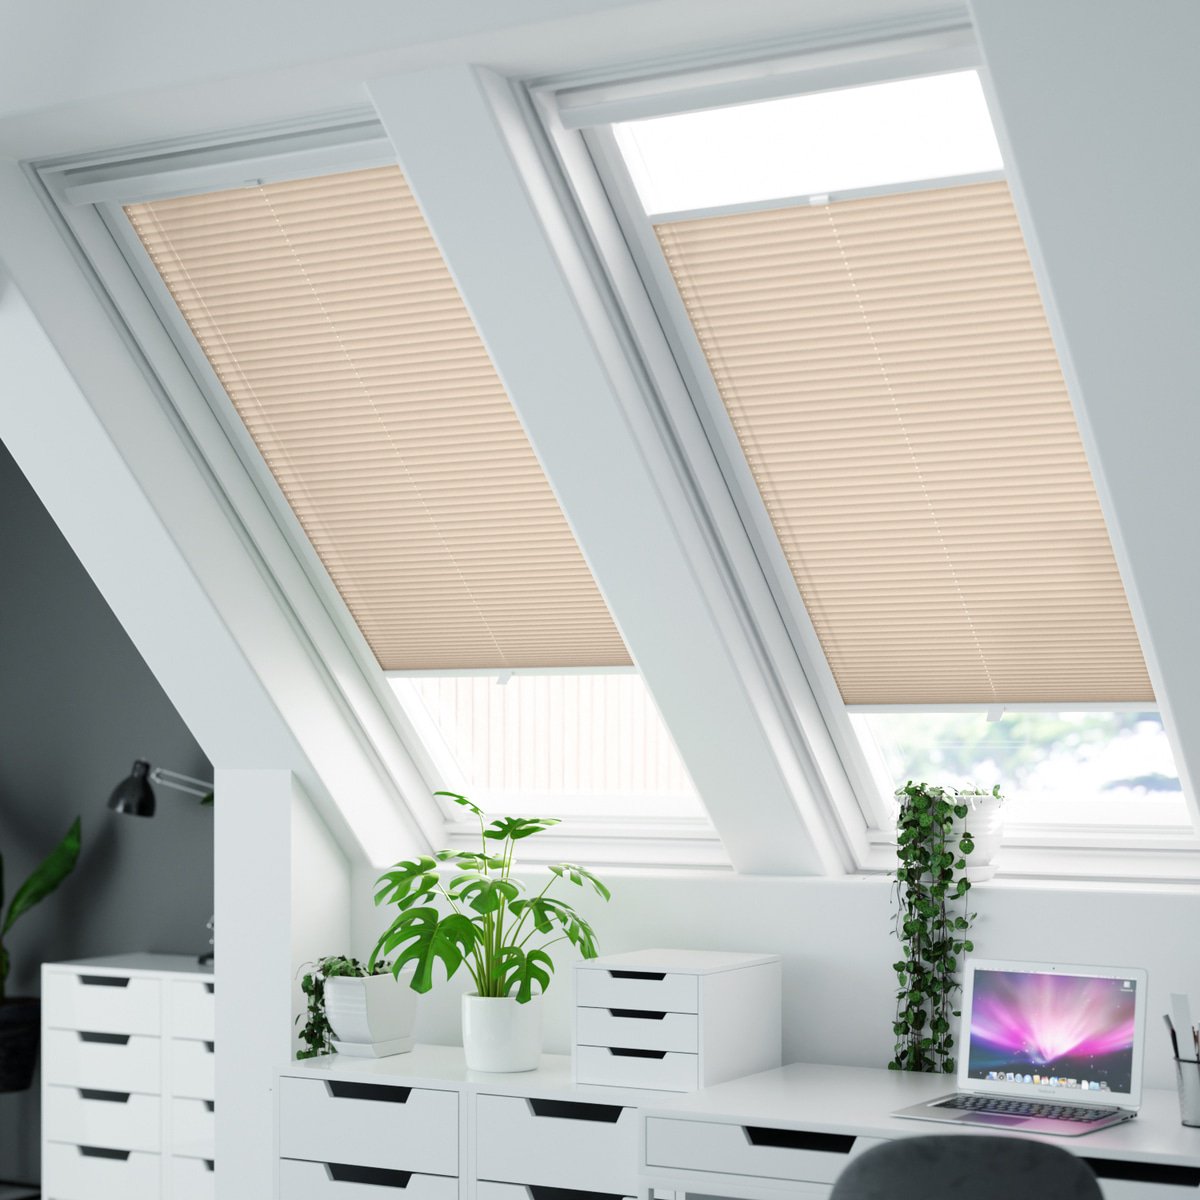 100% blickdichtes Plissee nach Maß mit Struktur, leicht glänzend,  'Reflect'-Rückseite - Creme-Weiß | Sonnenschutz für Fenster nach Maß -  Online-Shop